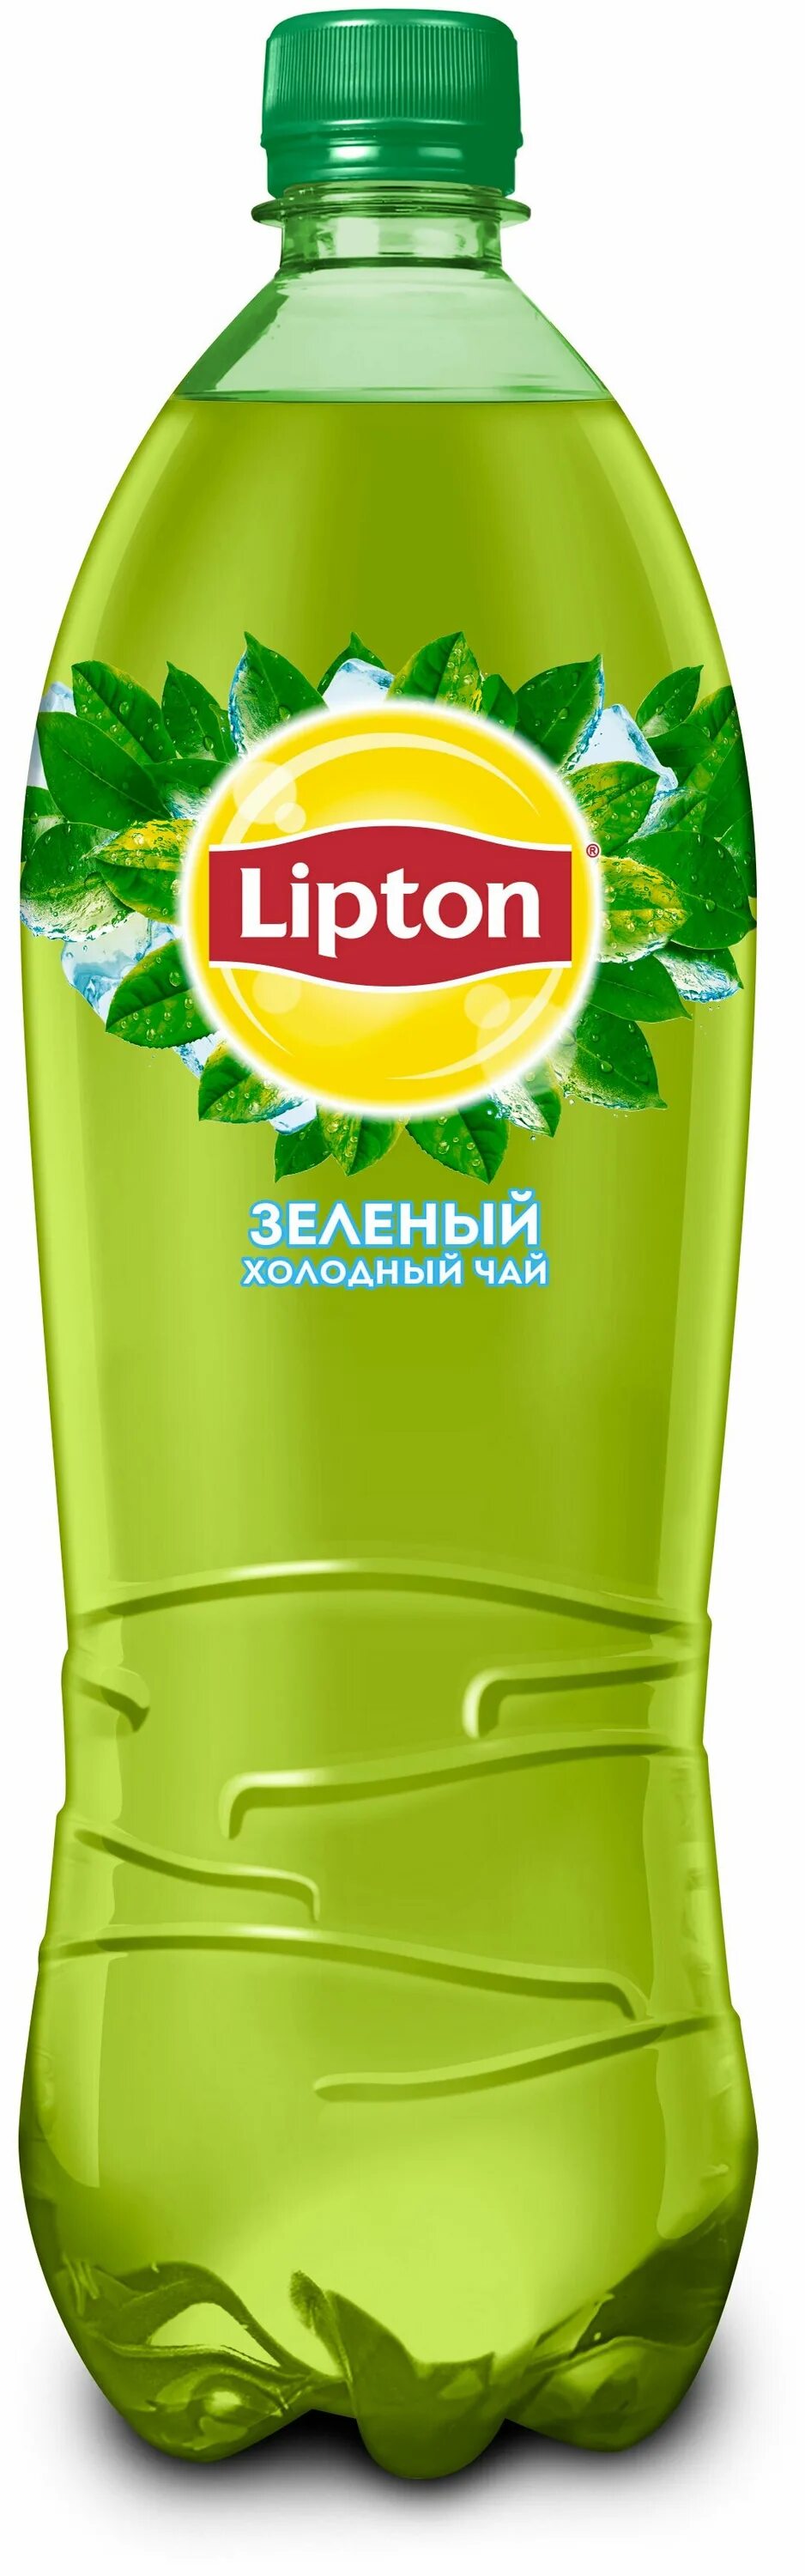 Липтон напиток. Чай холодный Липтон 1 л зеленый ПЭТ. Холодны зеленый час Липтон с. Липтон зеленый чай 1л. Чай Липтон холодный зеленый 1л.